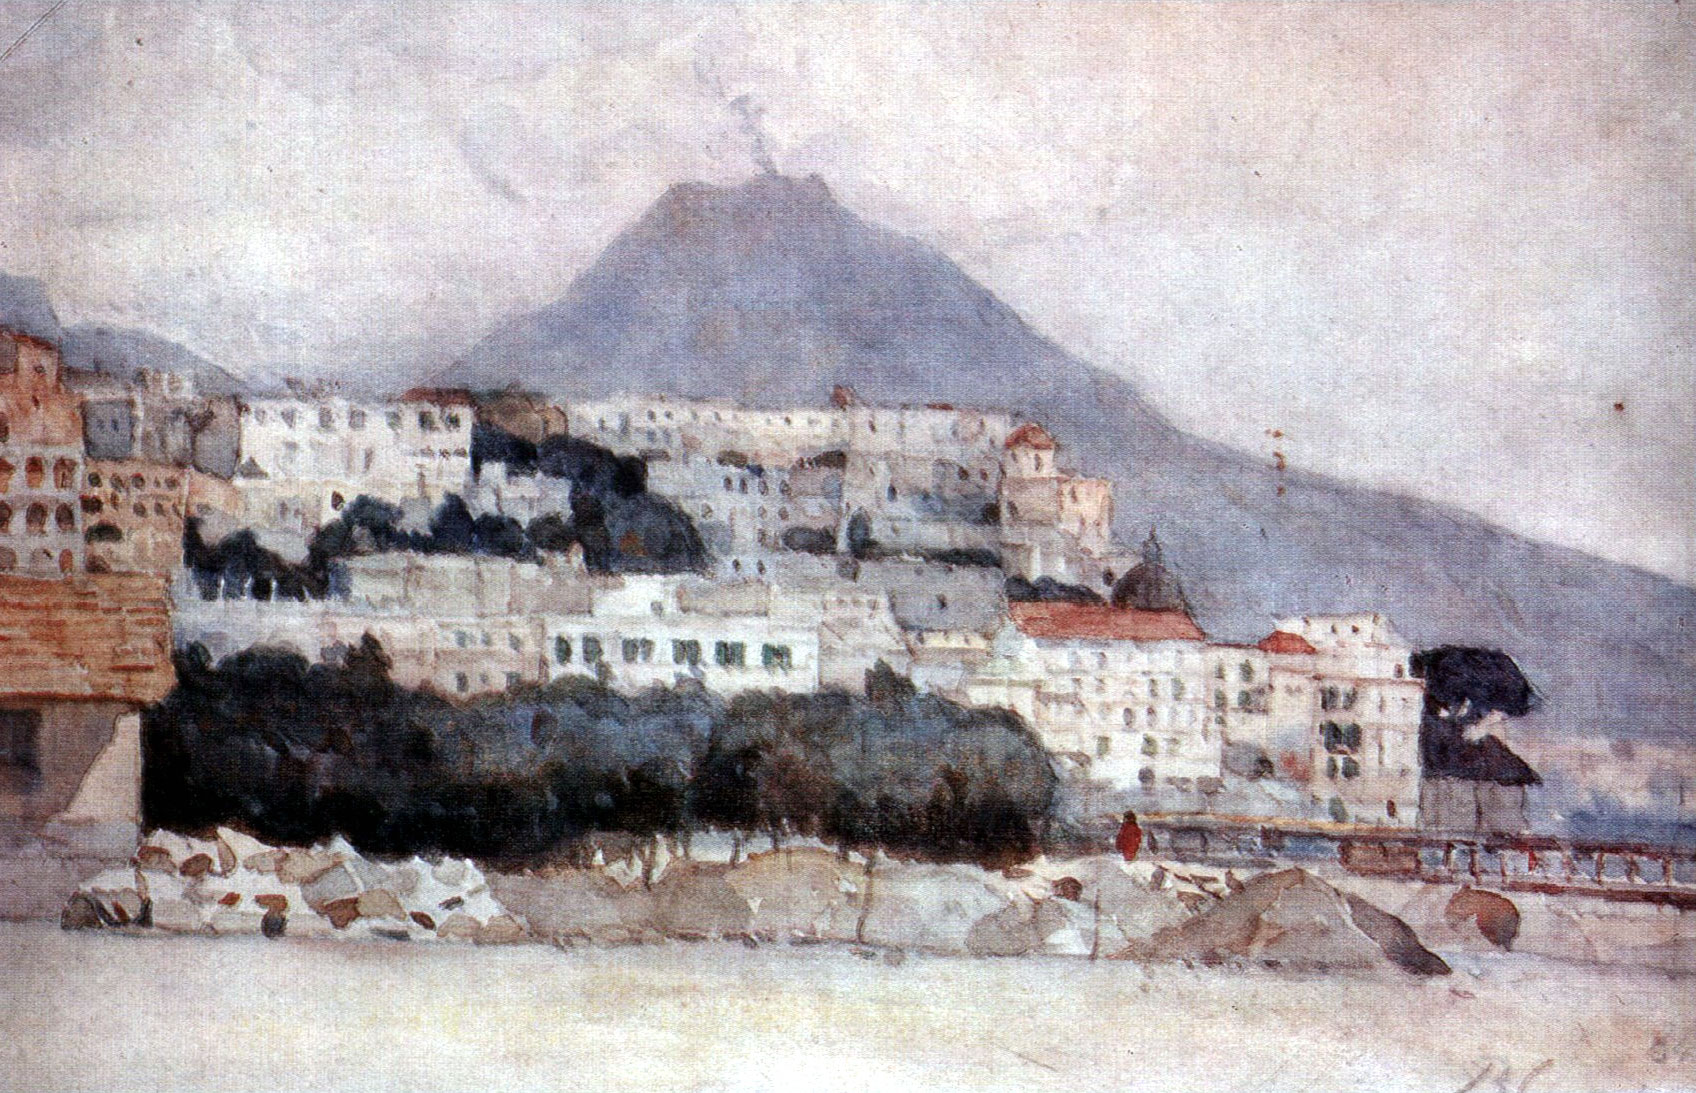 Naples. Vesuvius. (1884).